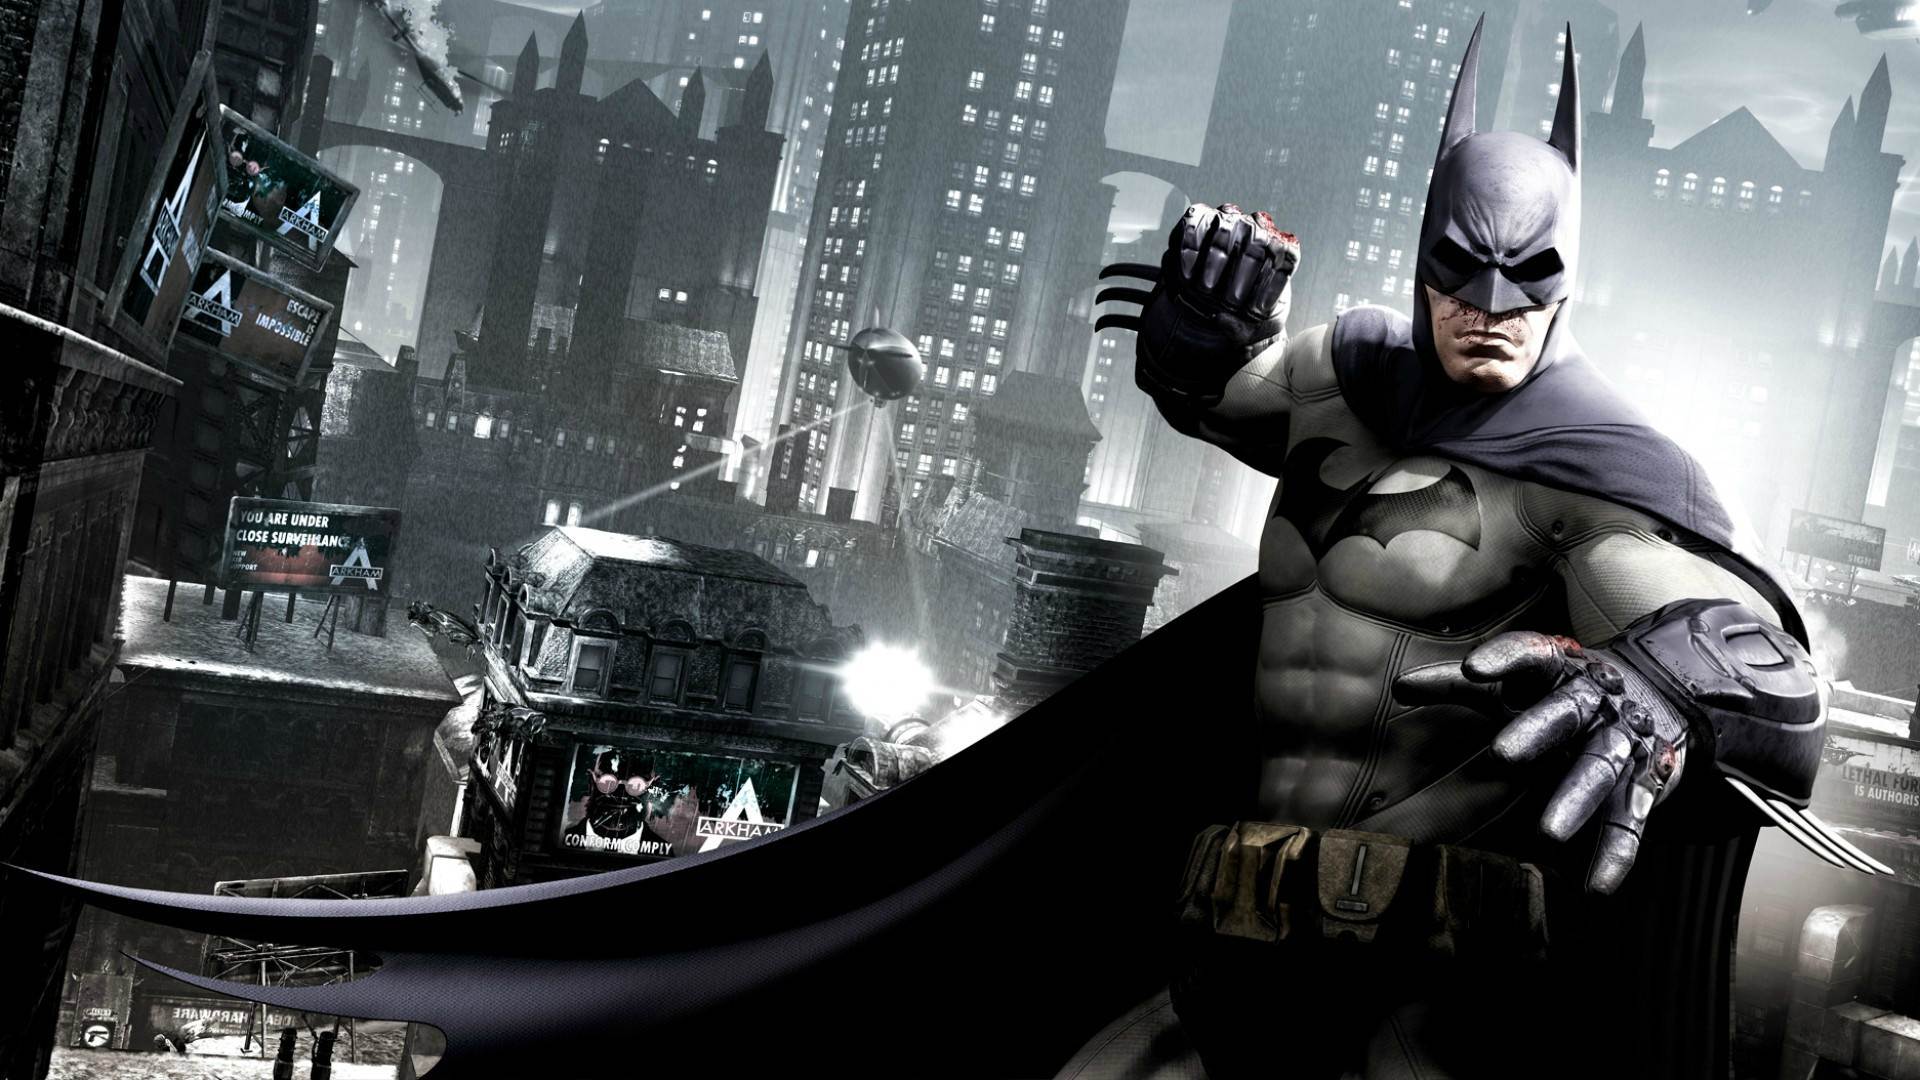 batman arkham origins wallpaper in HD « GamingBolt.com: Video Game